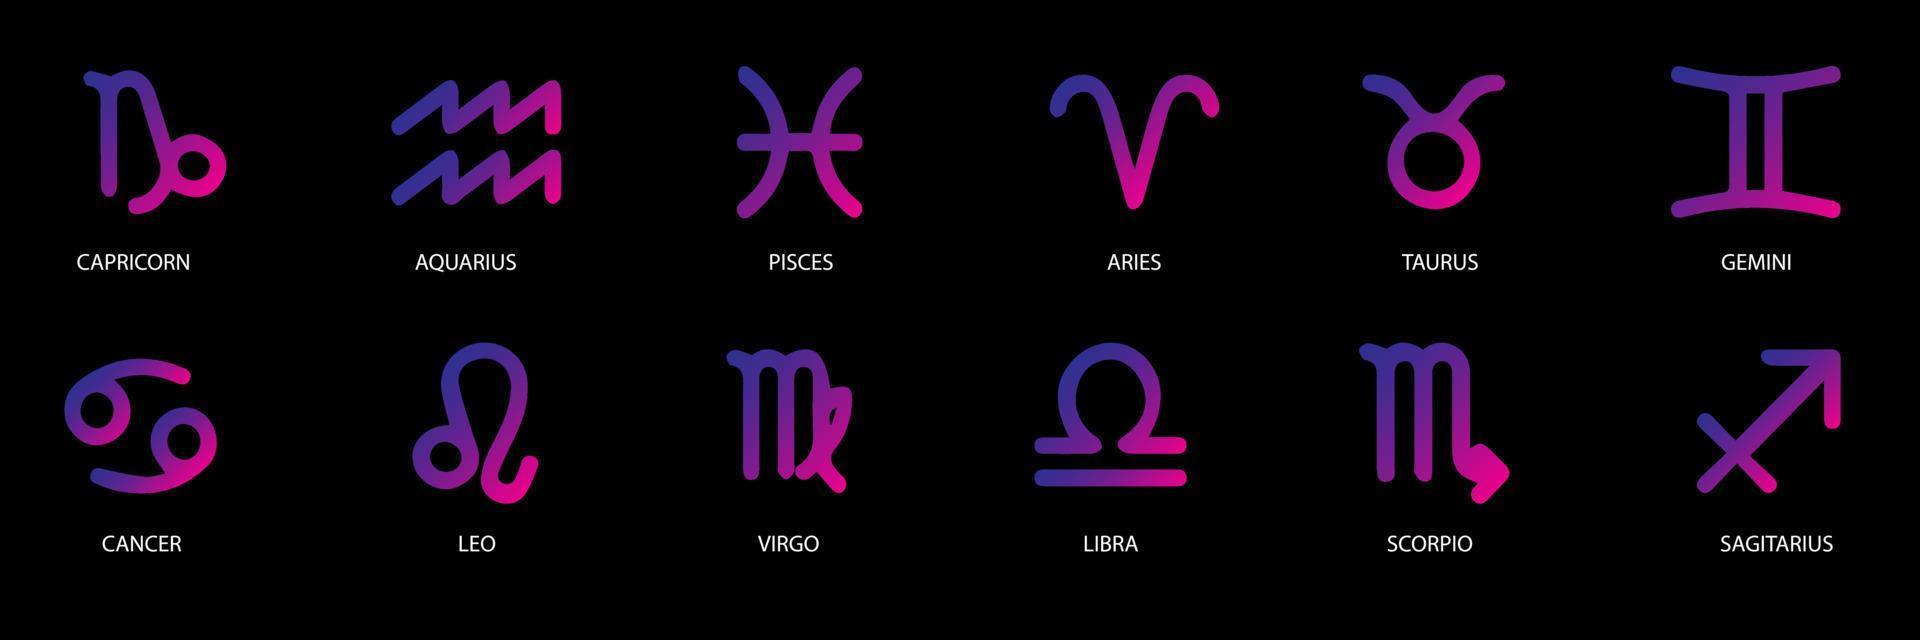 Vektorgrafik-Astrologie-Set. eine einfache geometrische Darstellung der Tierkreiszeichen für Horoskope mit Titeln. eps10-Vektor vektor